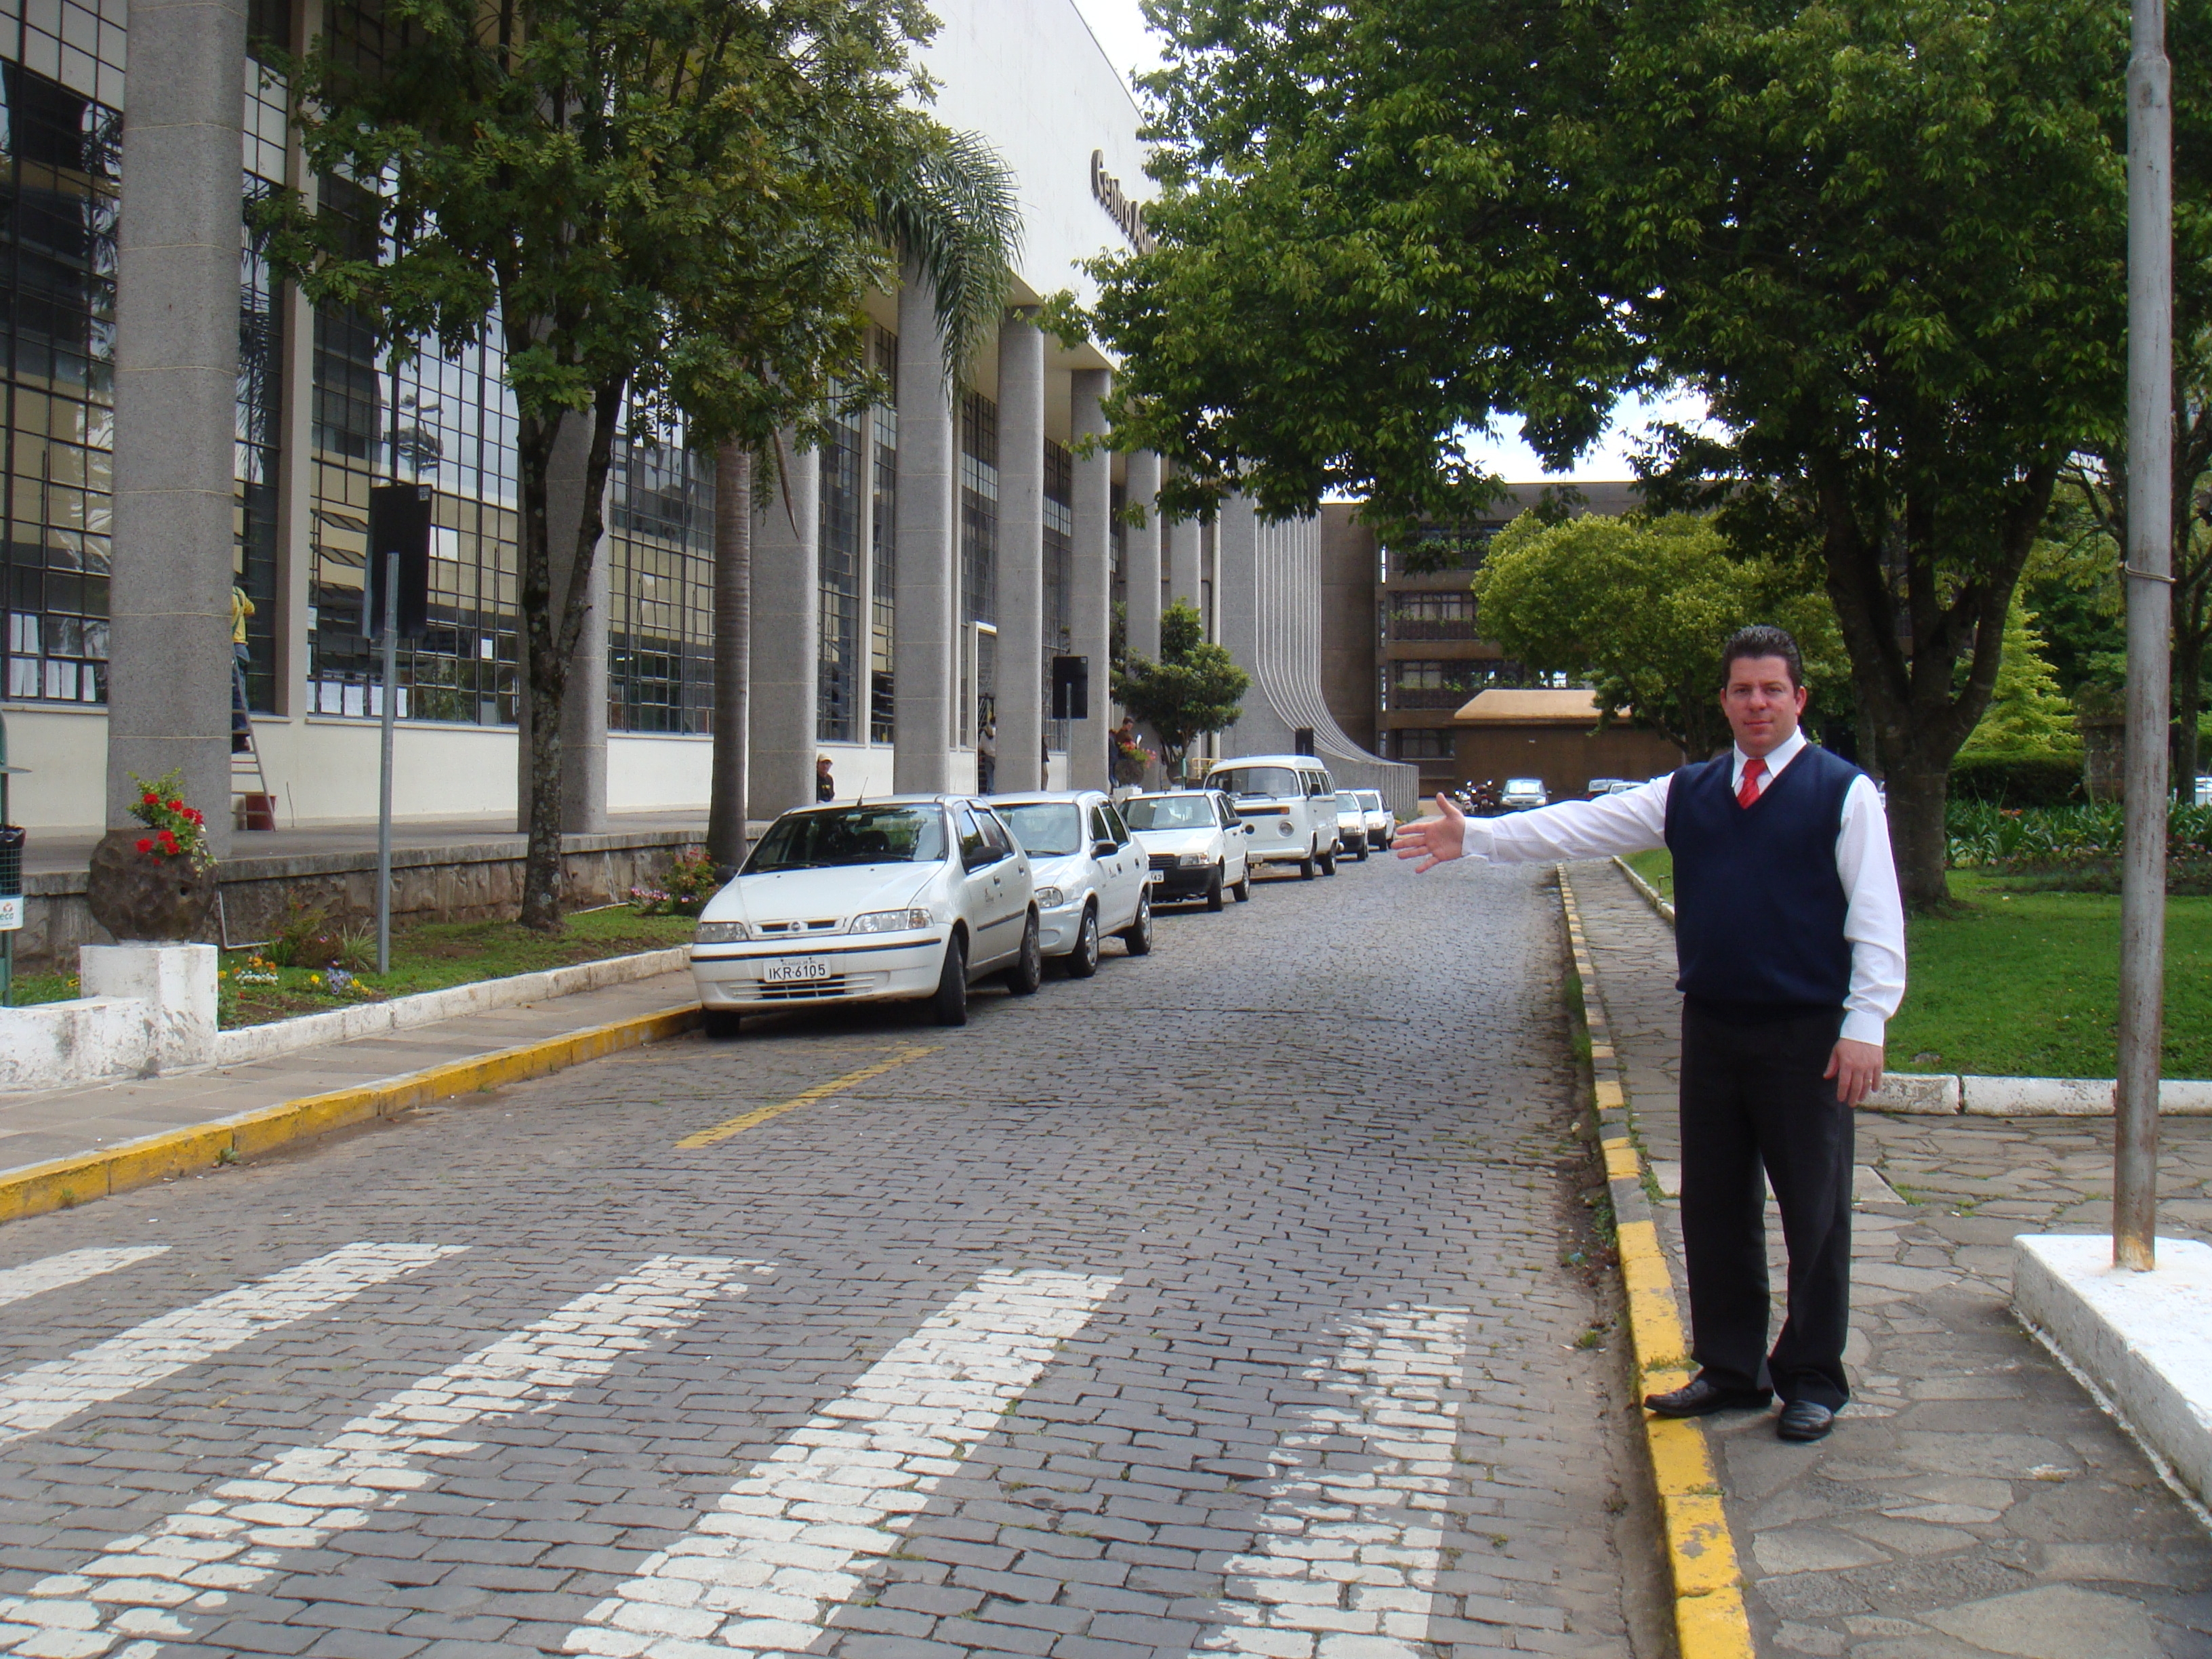 Renato Nunes apresenta indicação para Executivo implantar Campanha de Trânsito